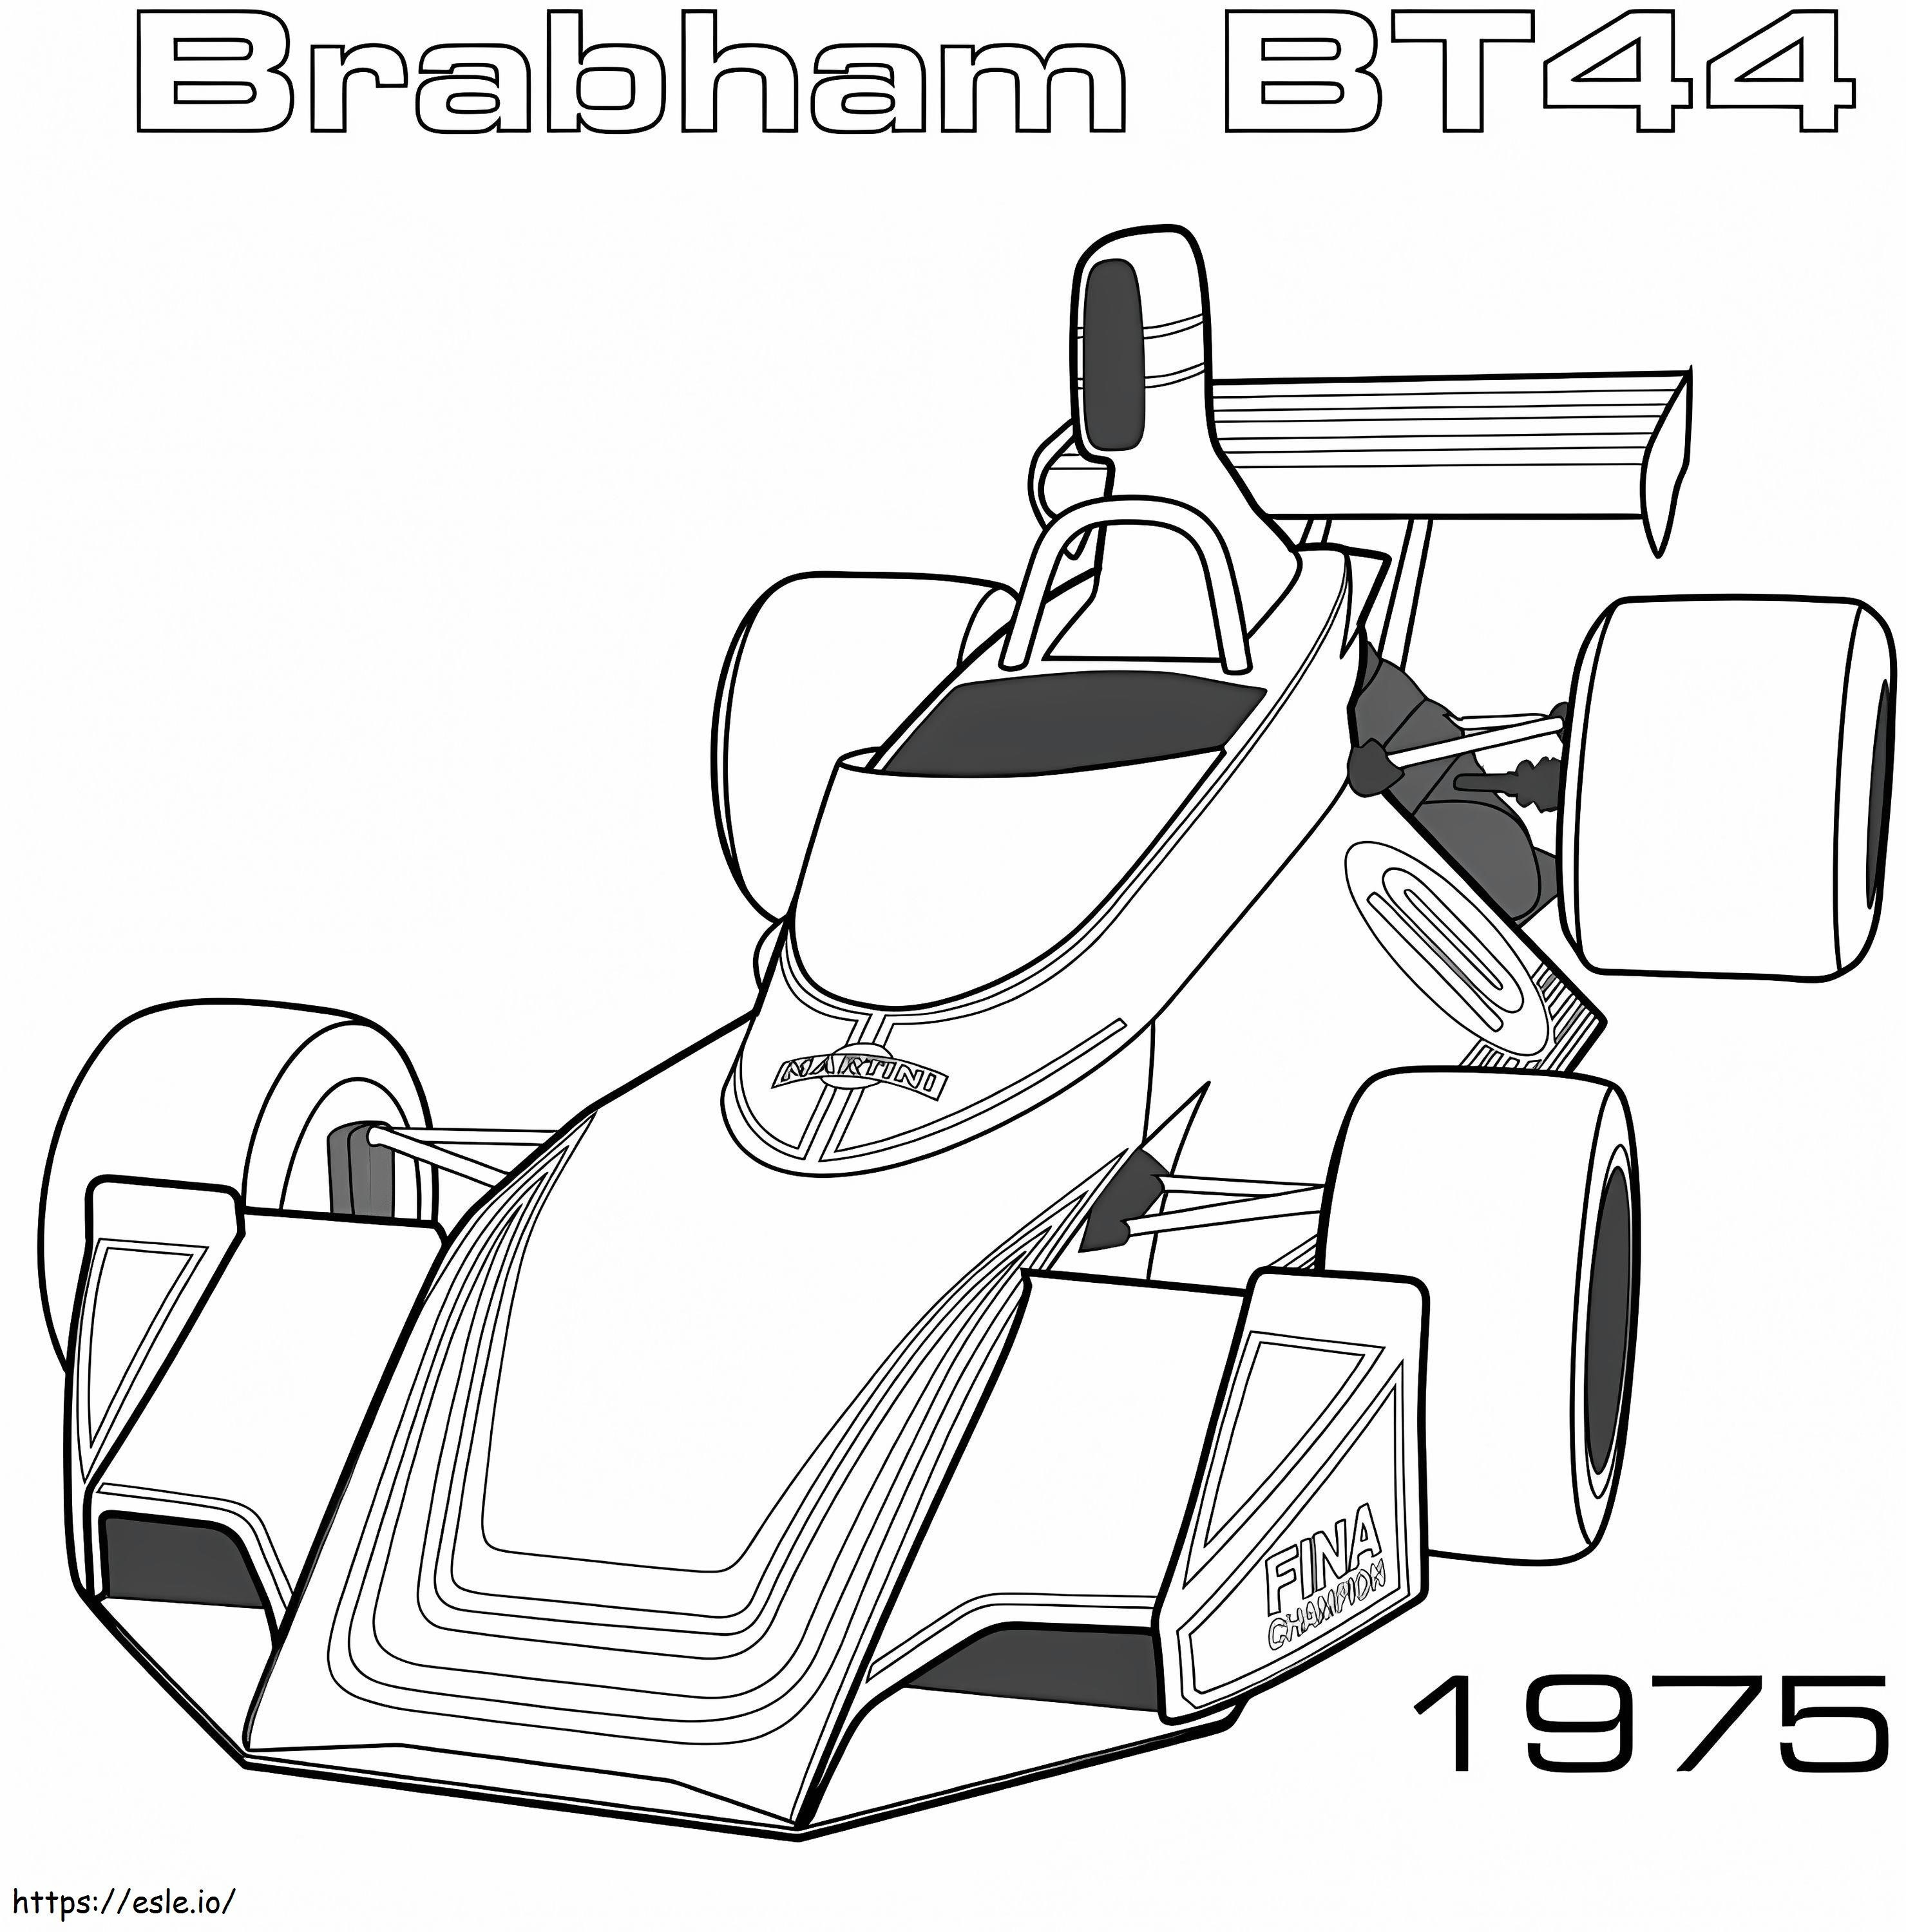 Formula 1 Racing Car 7 coloring page